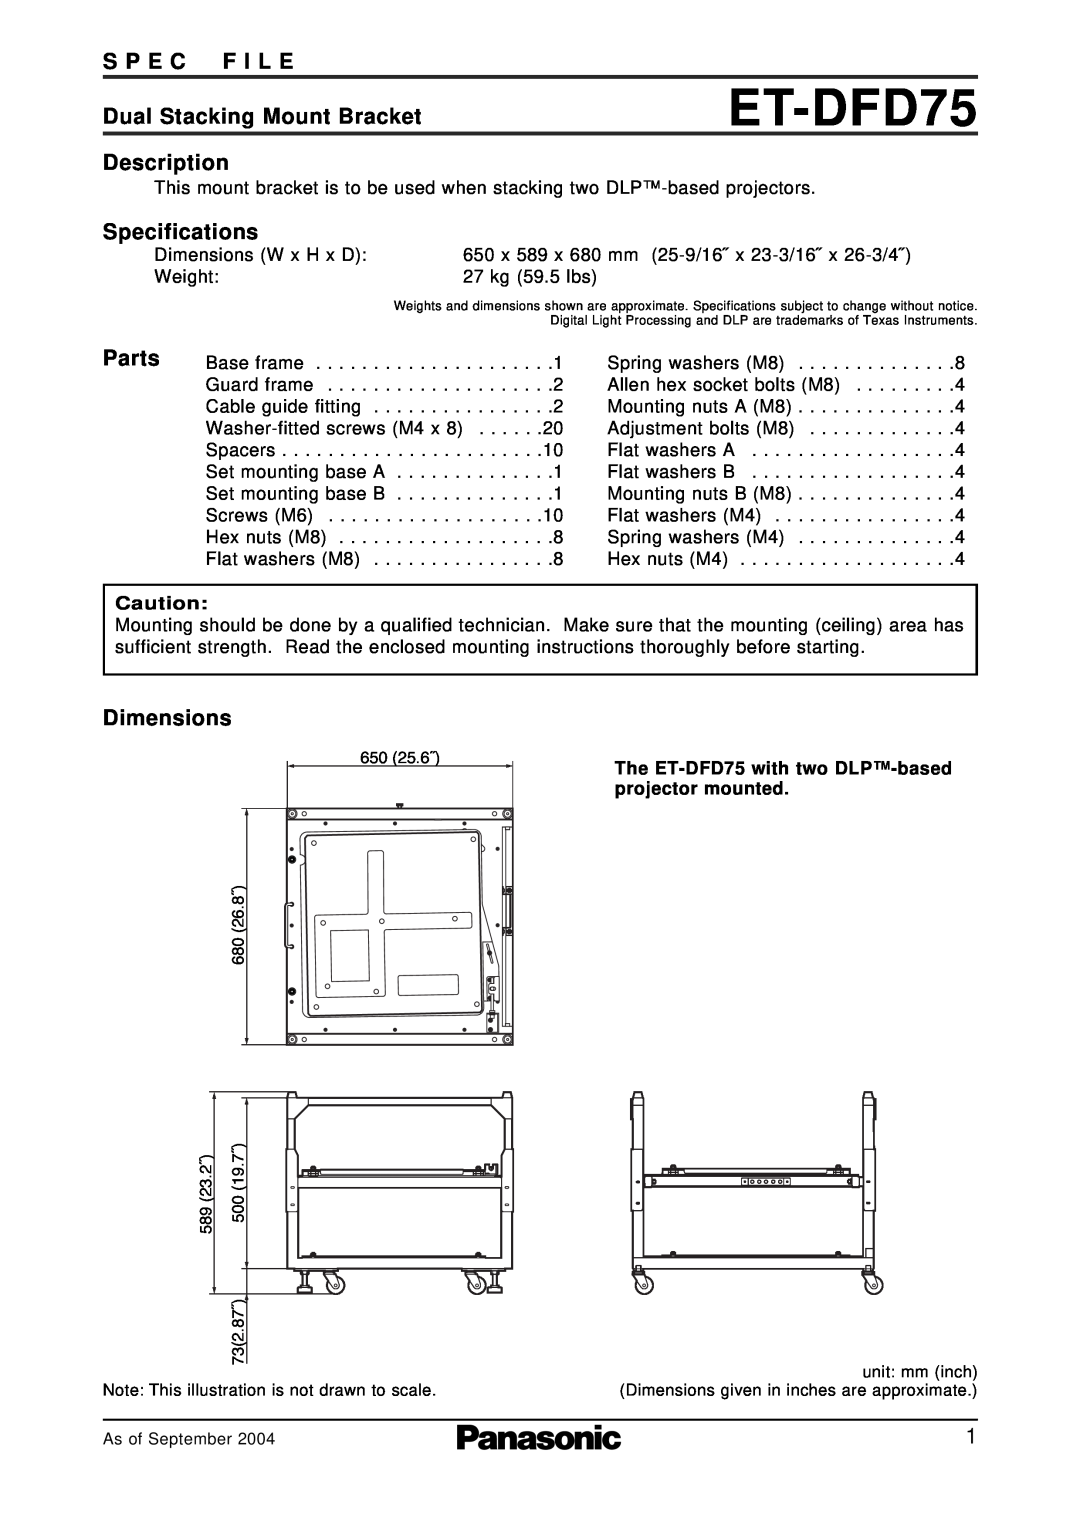 Panasonic ET-DFD75 specifications S P E C F I L E, Dual Stacking Mount Bracket, Description, Specifications, Parts 